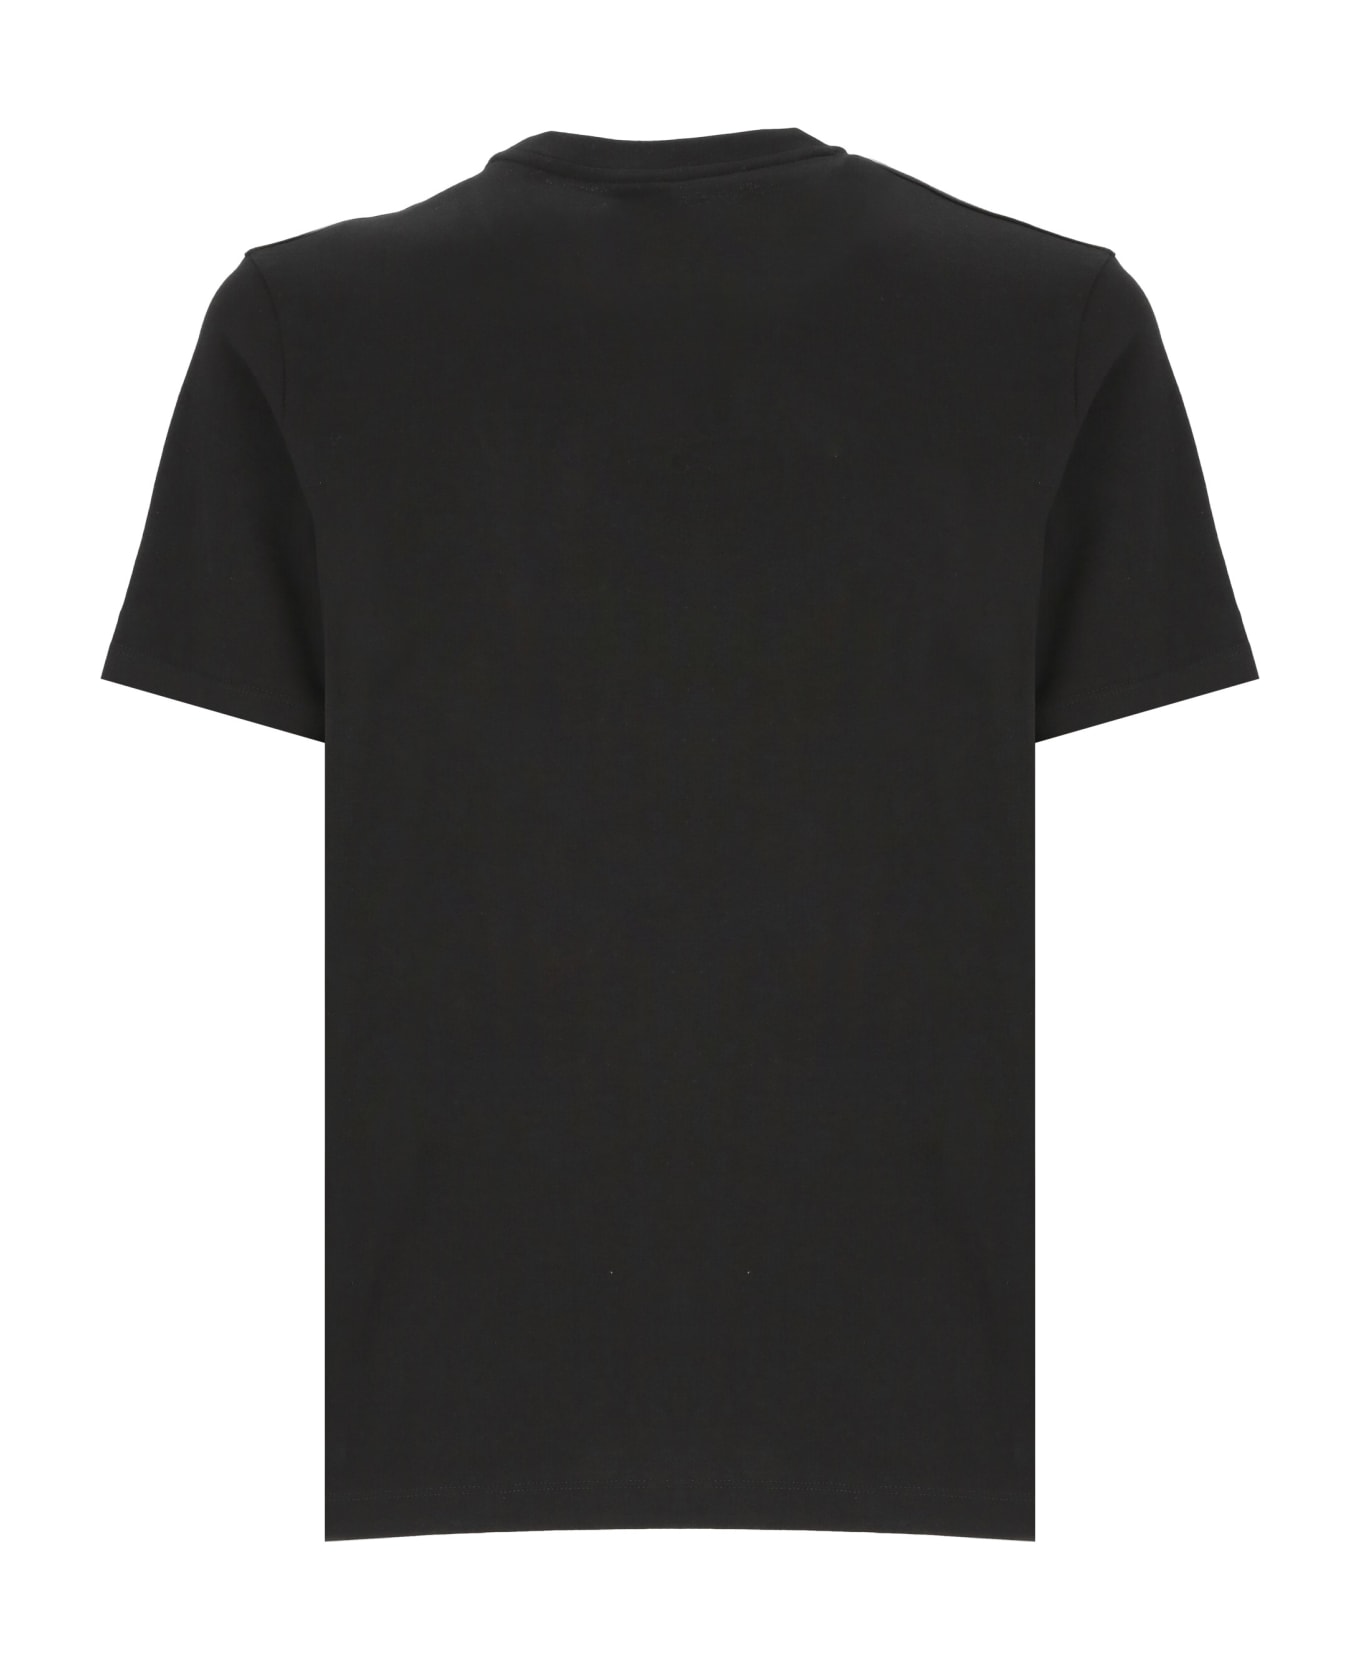 Hugo Boss Tiburt 354 T-shirt - Black シャツ